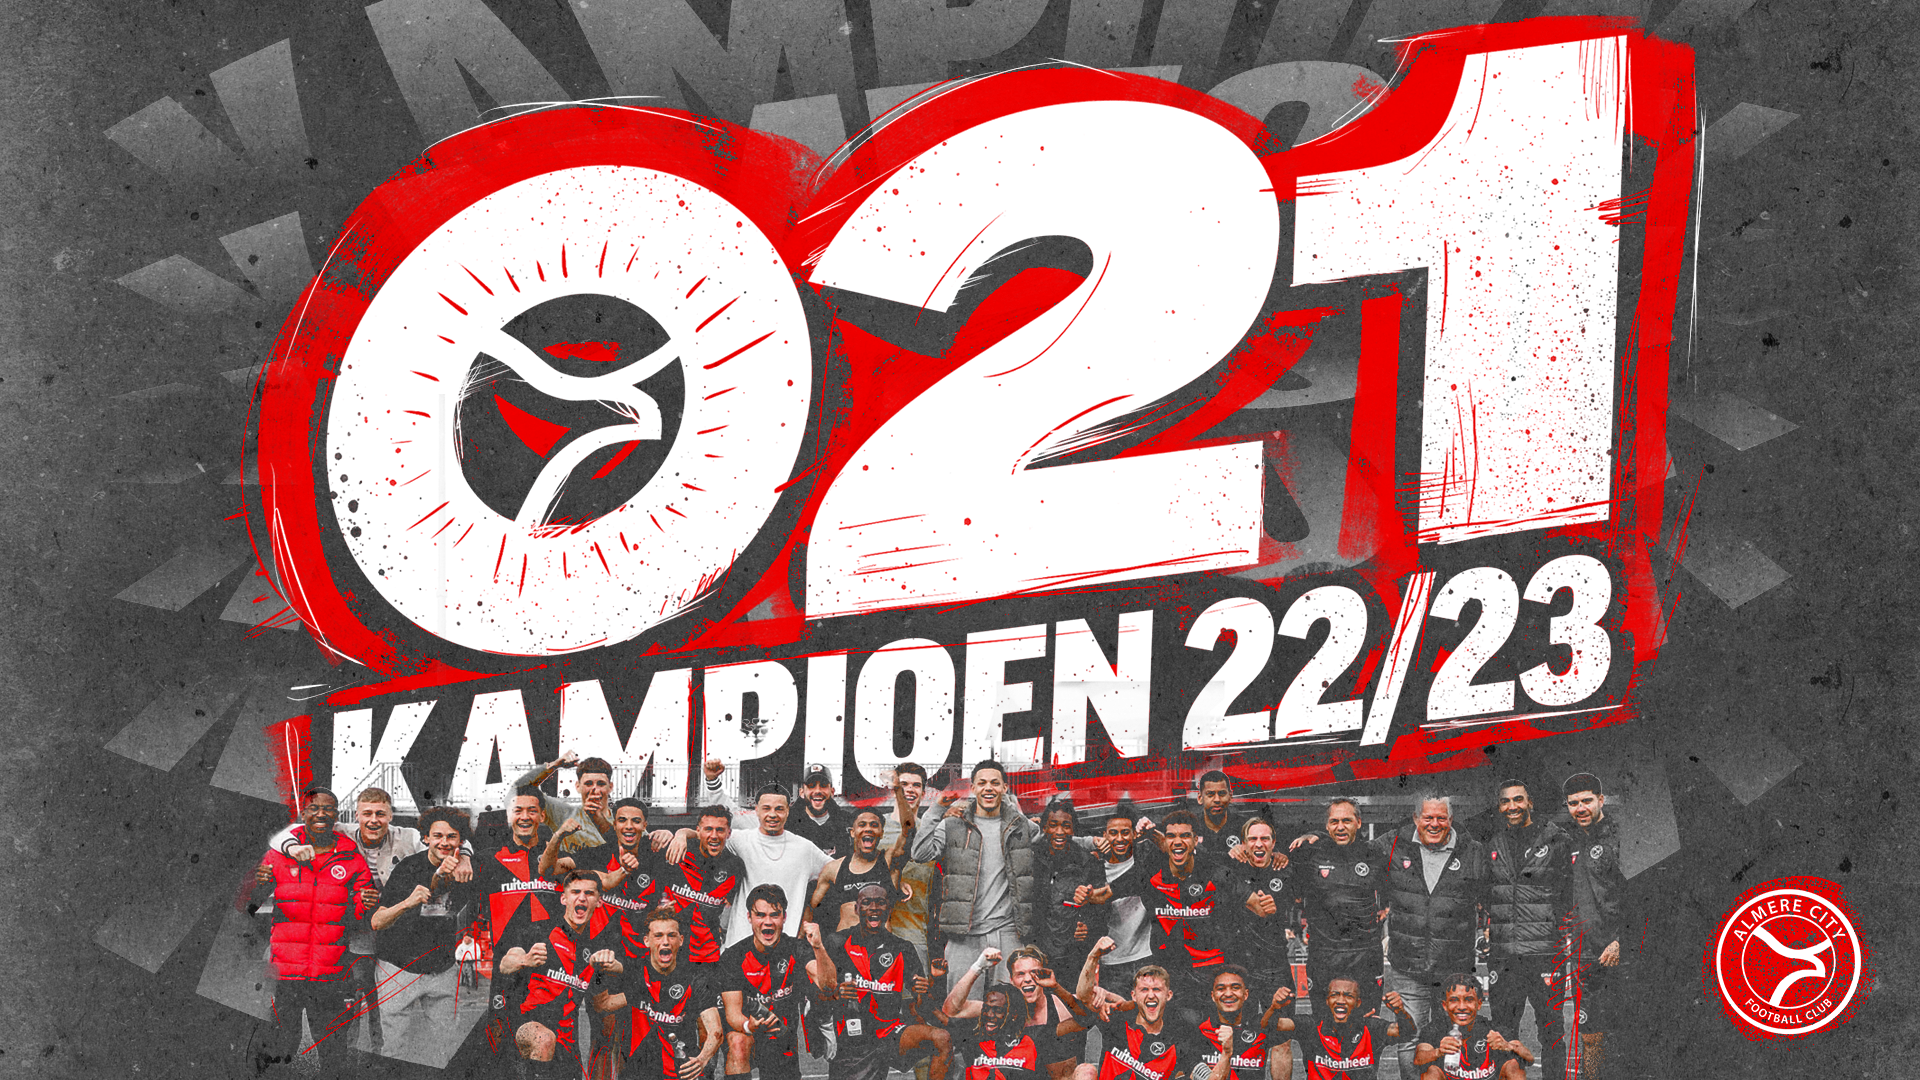 Ruitenheer Almere City FC O21 prolongeert Eredivisie kampioenschap; promoveert